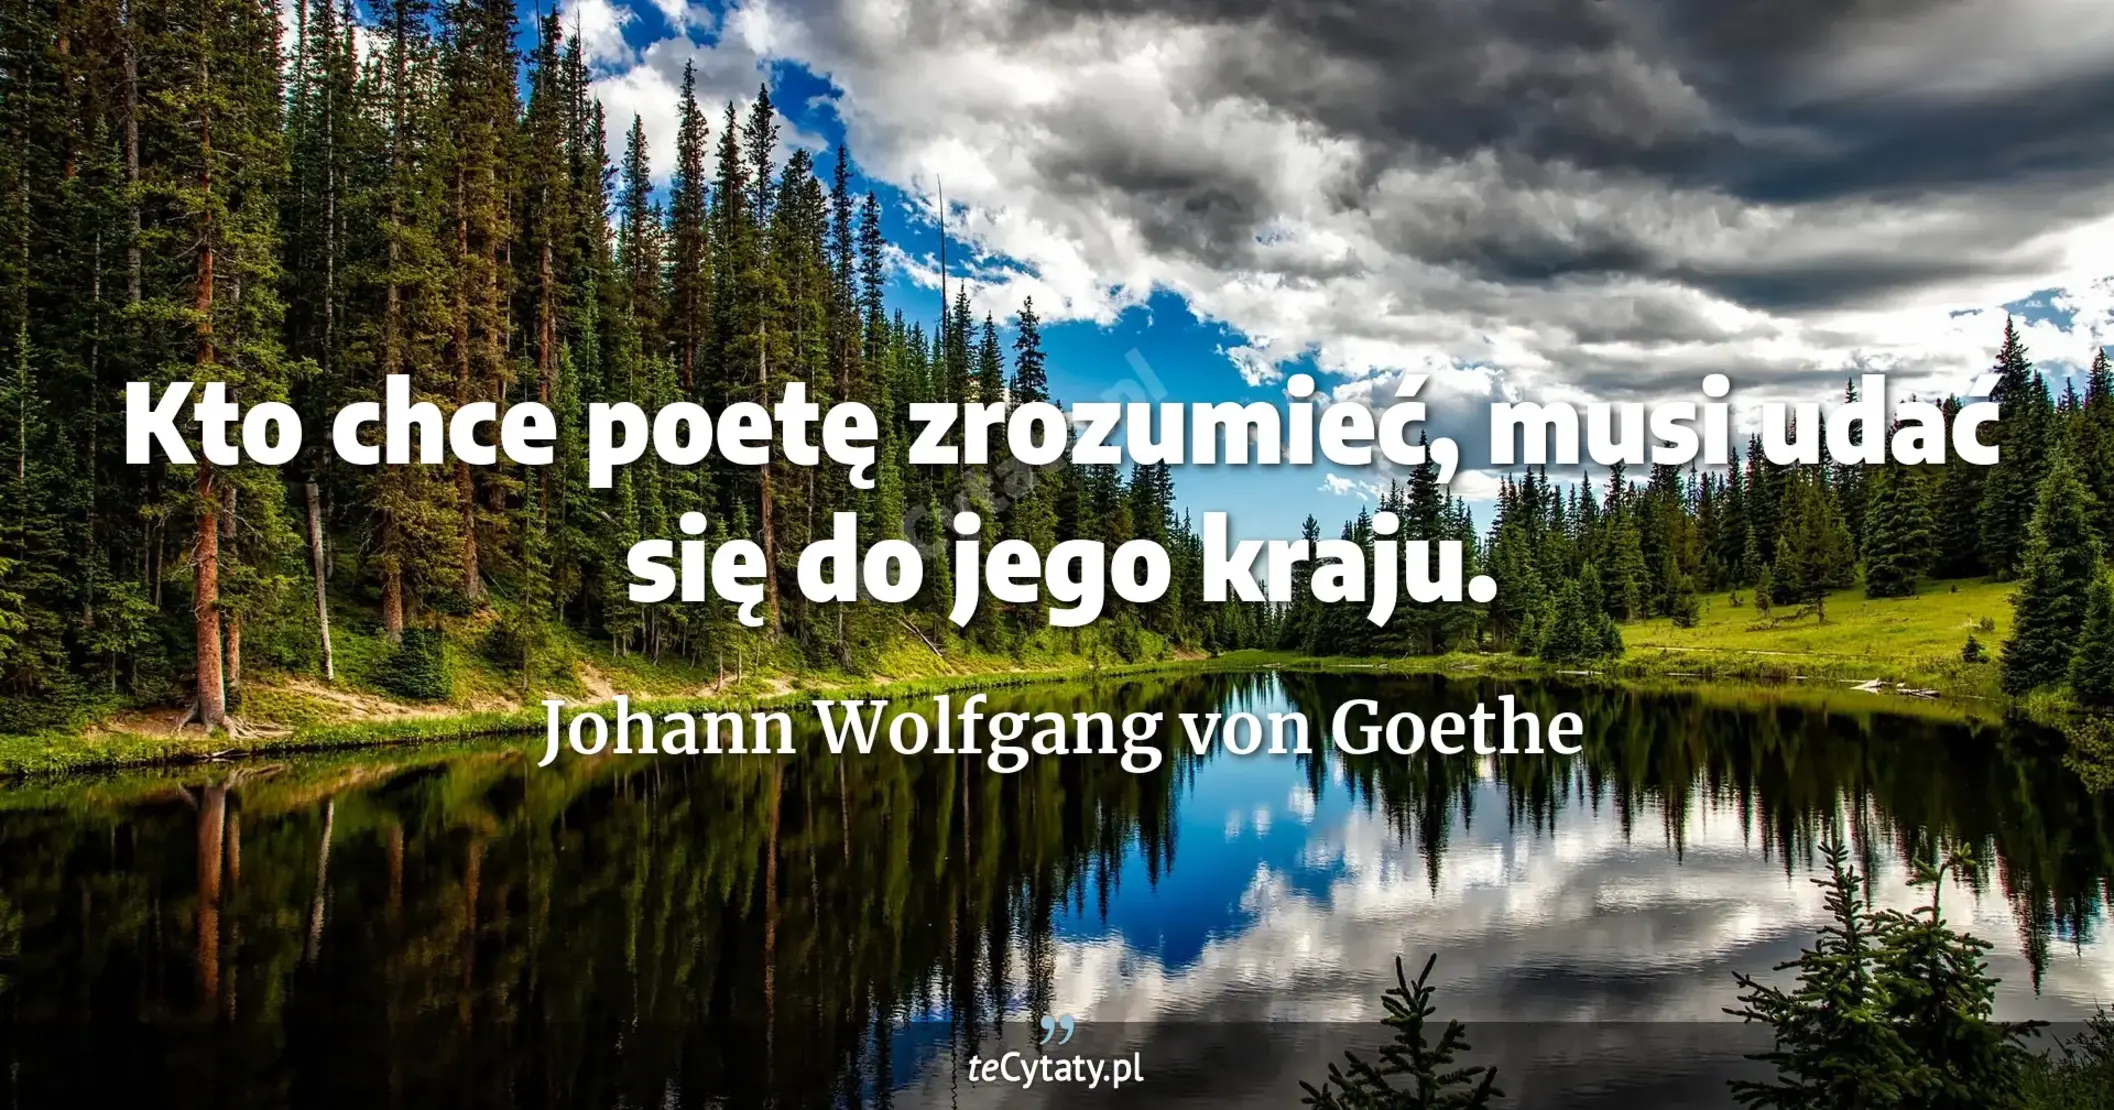 Kto chce poetę zrozumieć, musi udać się do jego kraju. - Johann Wolfgang von Goethe